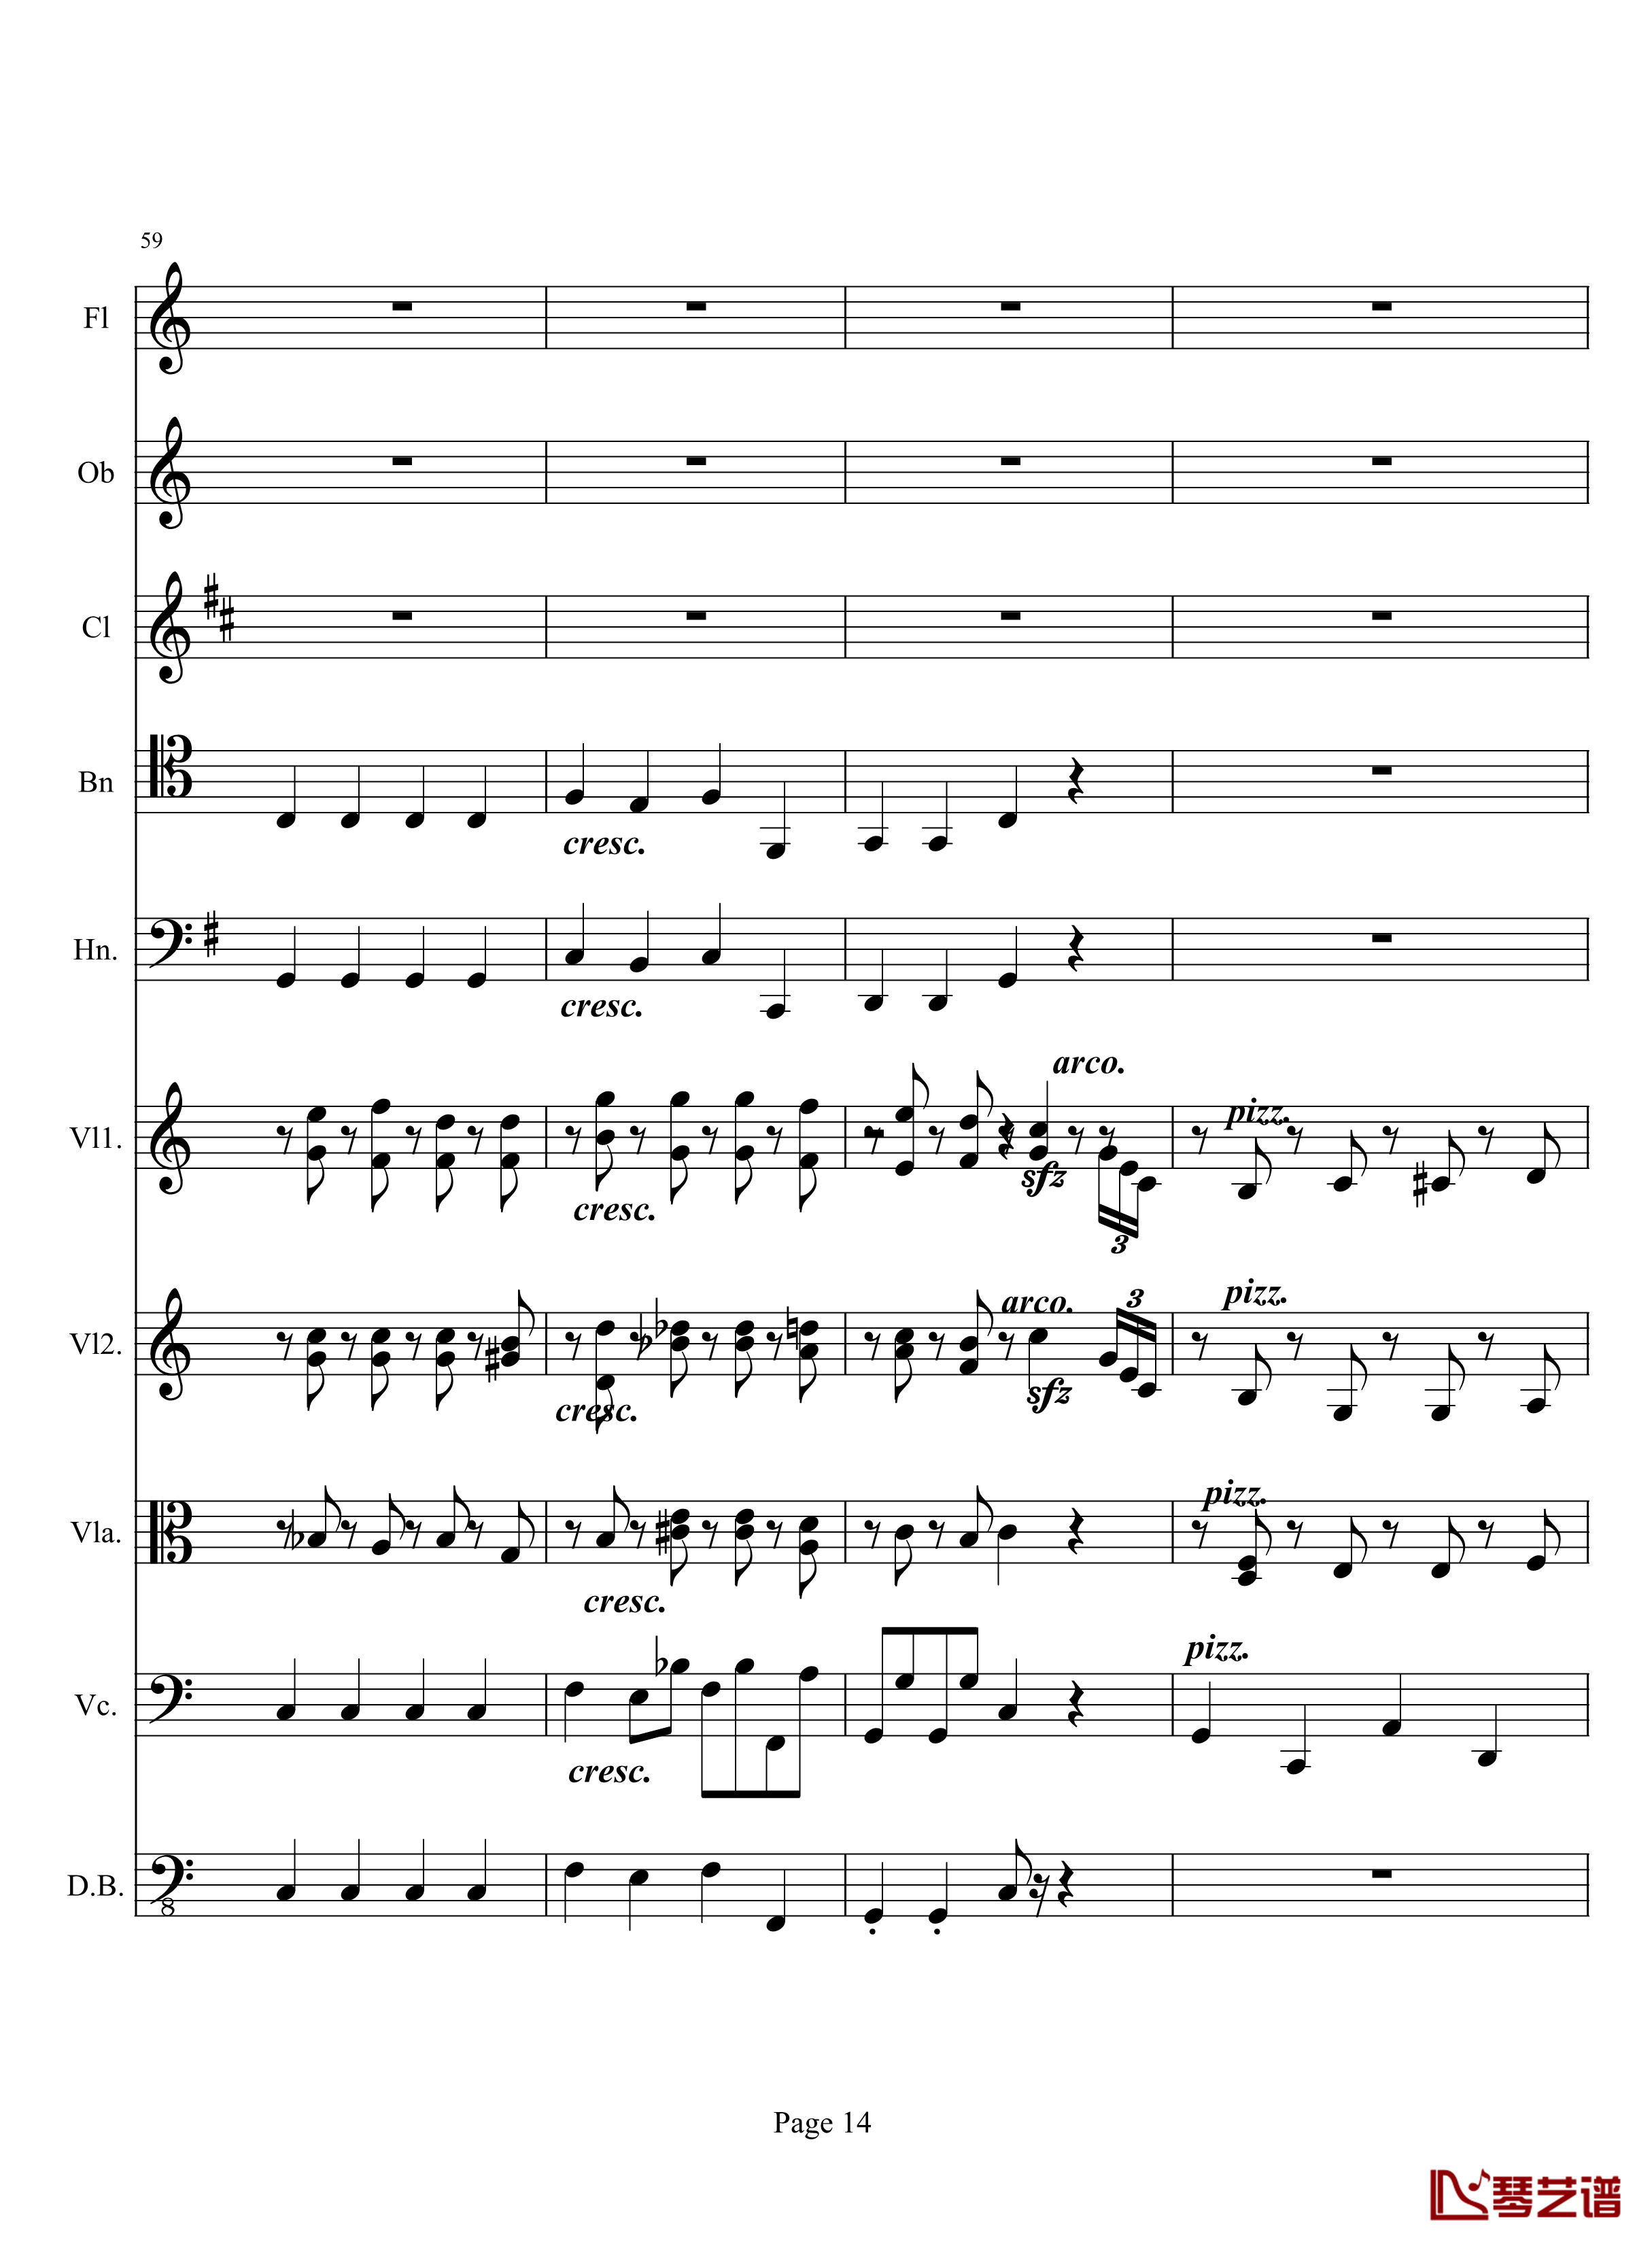 奏鸣曲之交响钢琴谱-第10首-2-贝多芬-beethoven14